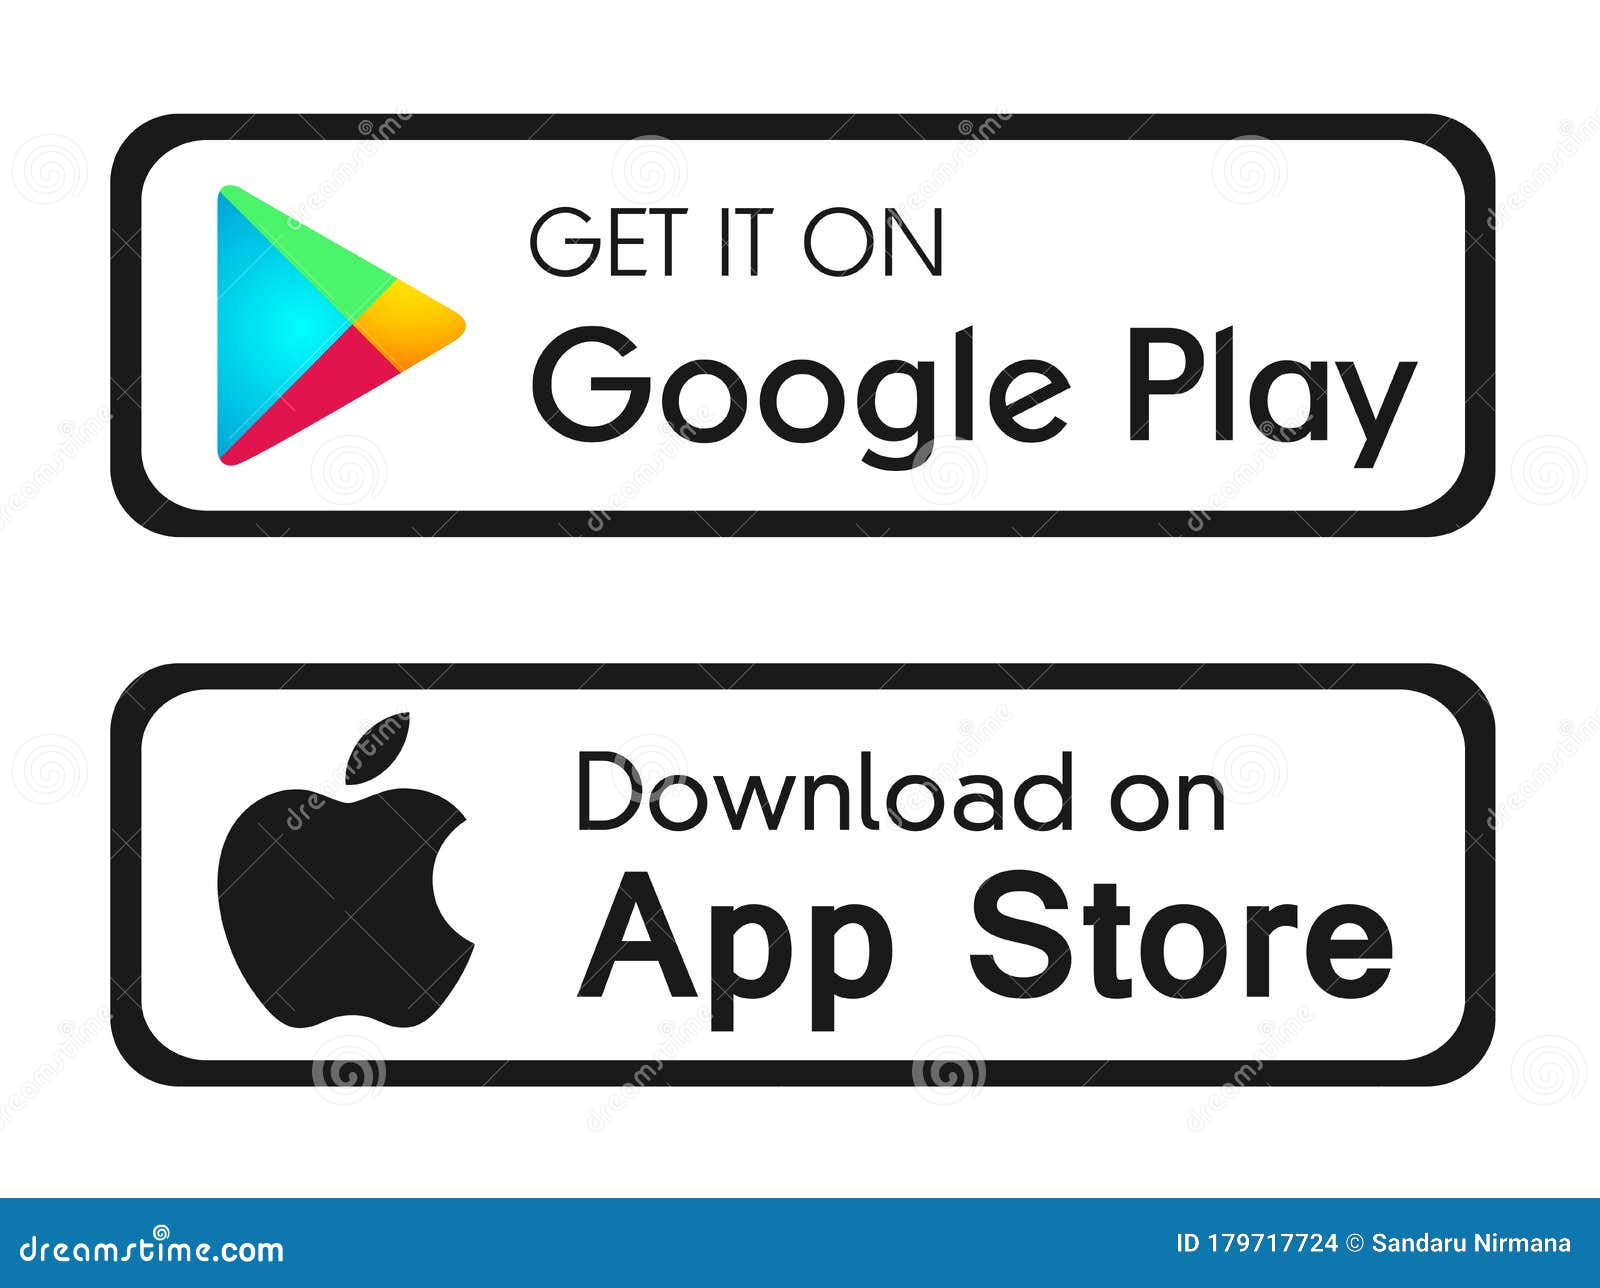 Google Play: Google Play là một kho tàng tuyệt vời để tải xuống những ứng dụng, game và sách mới nhất. Hãy khám phá và trải nghiệm những điều mới lạ trên Google Play ngay hôm nay!